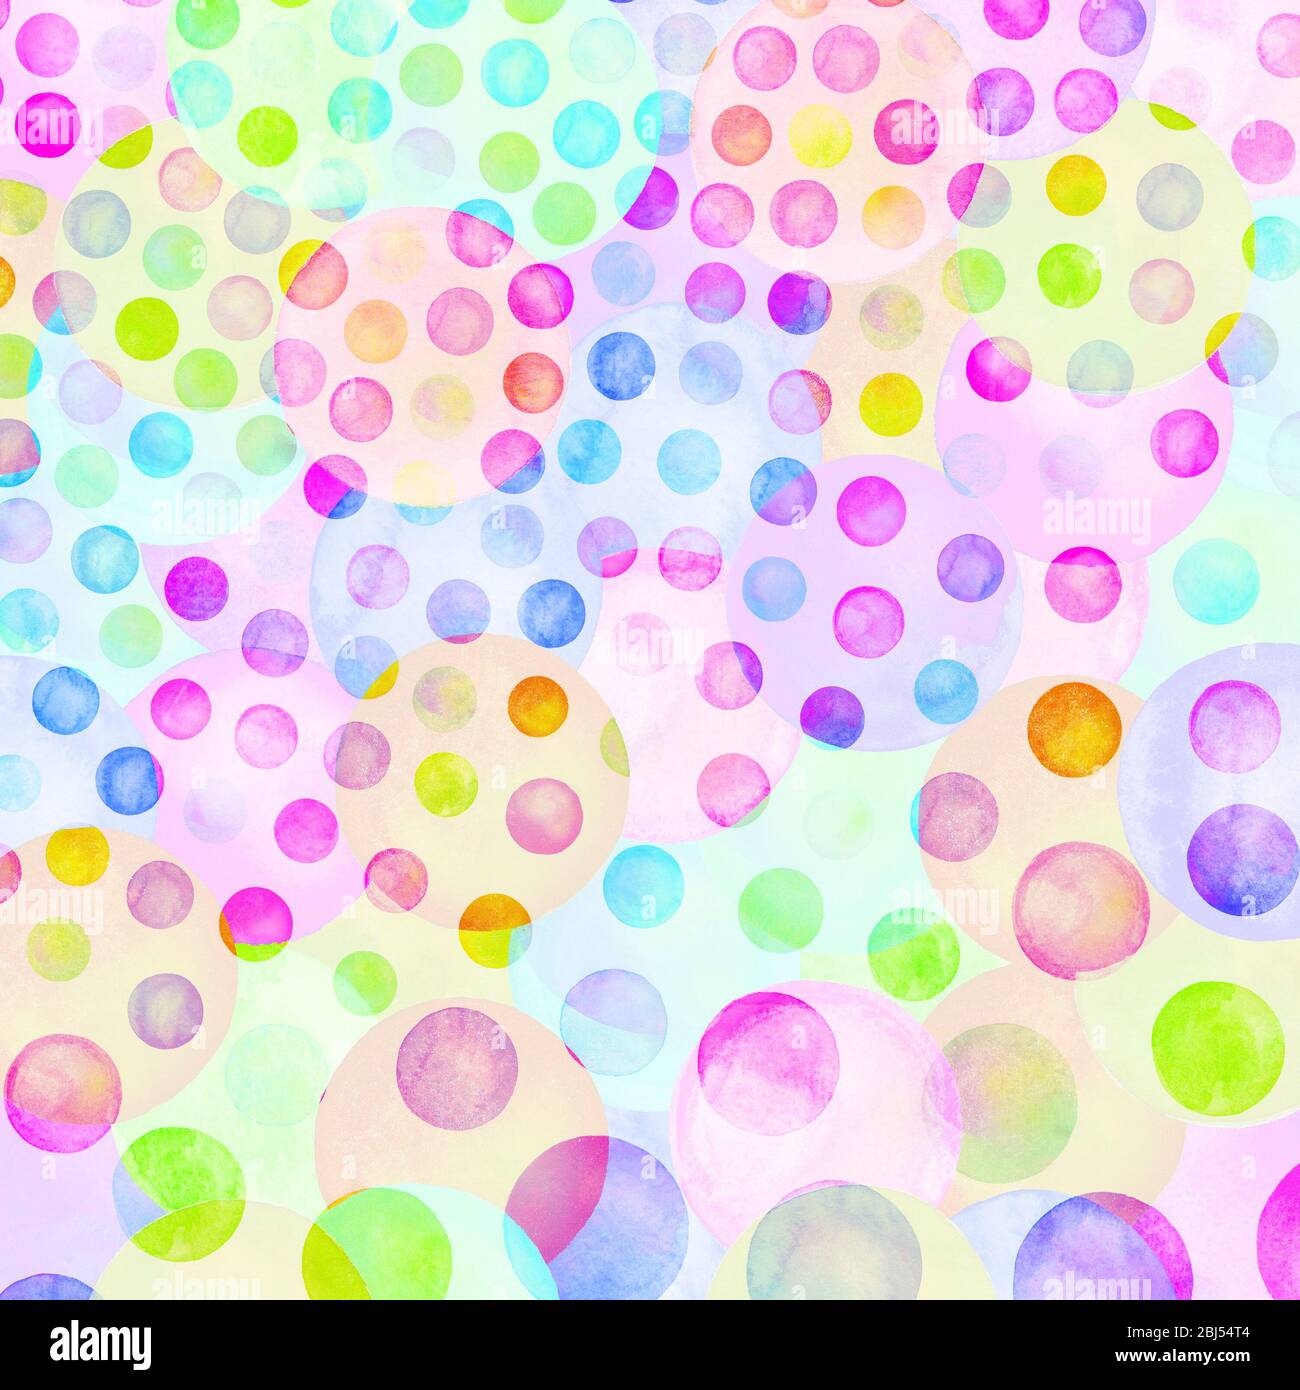 Explosion of confetti. Colorful confetti illustration. Watercolor ...